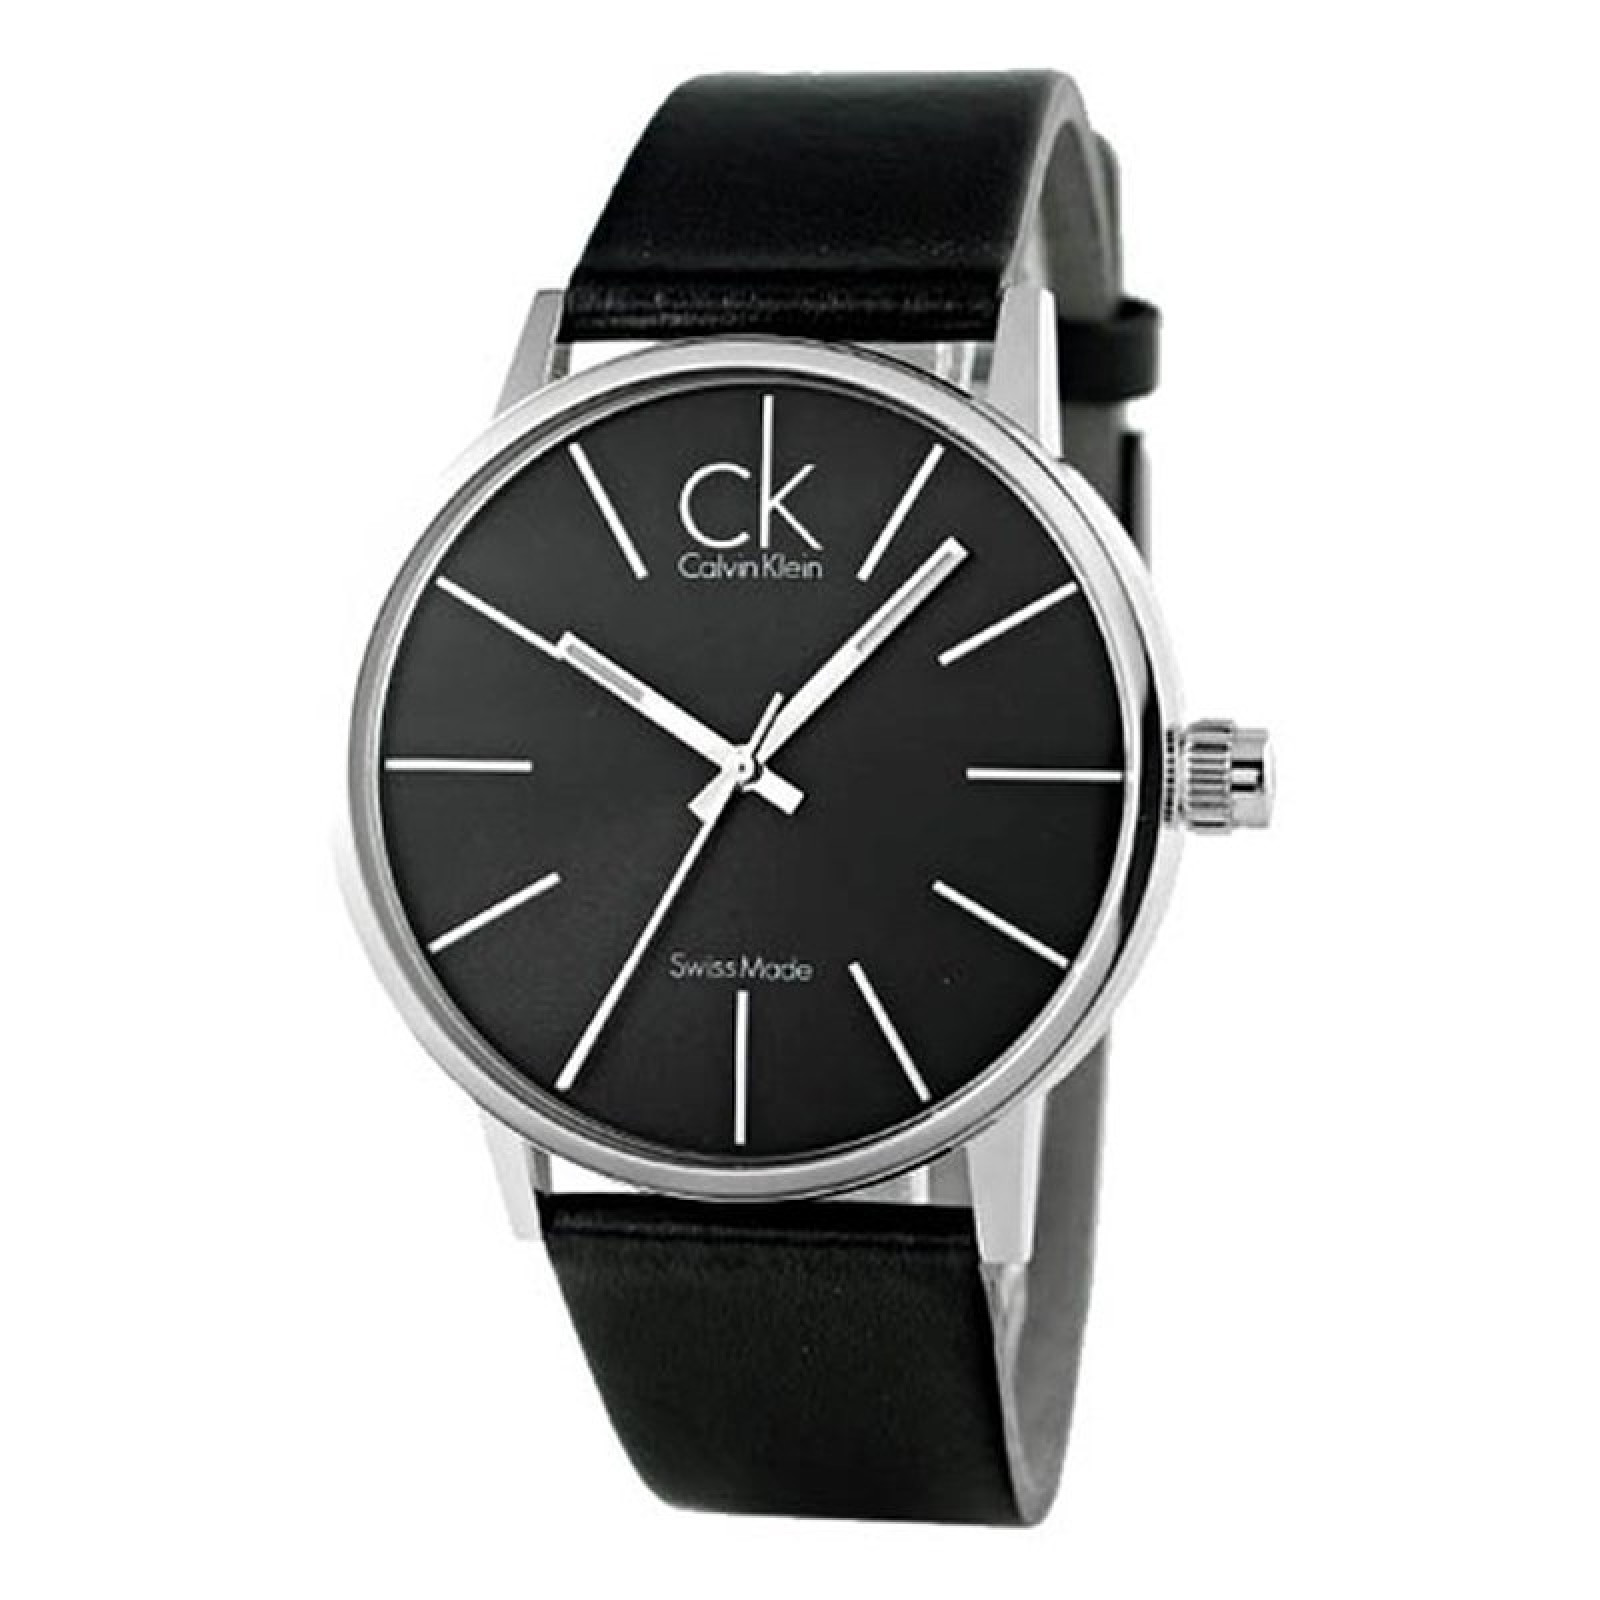 Мужской клатч Baellerry business + часы наручные мужские Calvin Klein  В ПОДАРОК